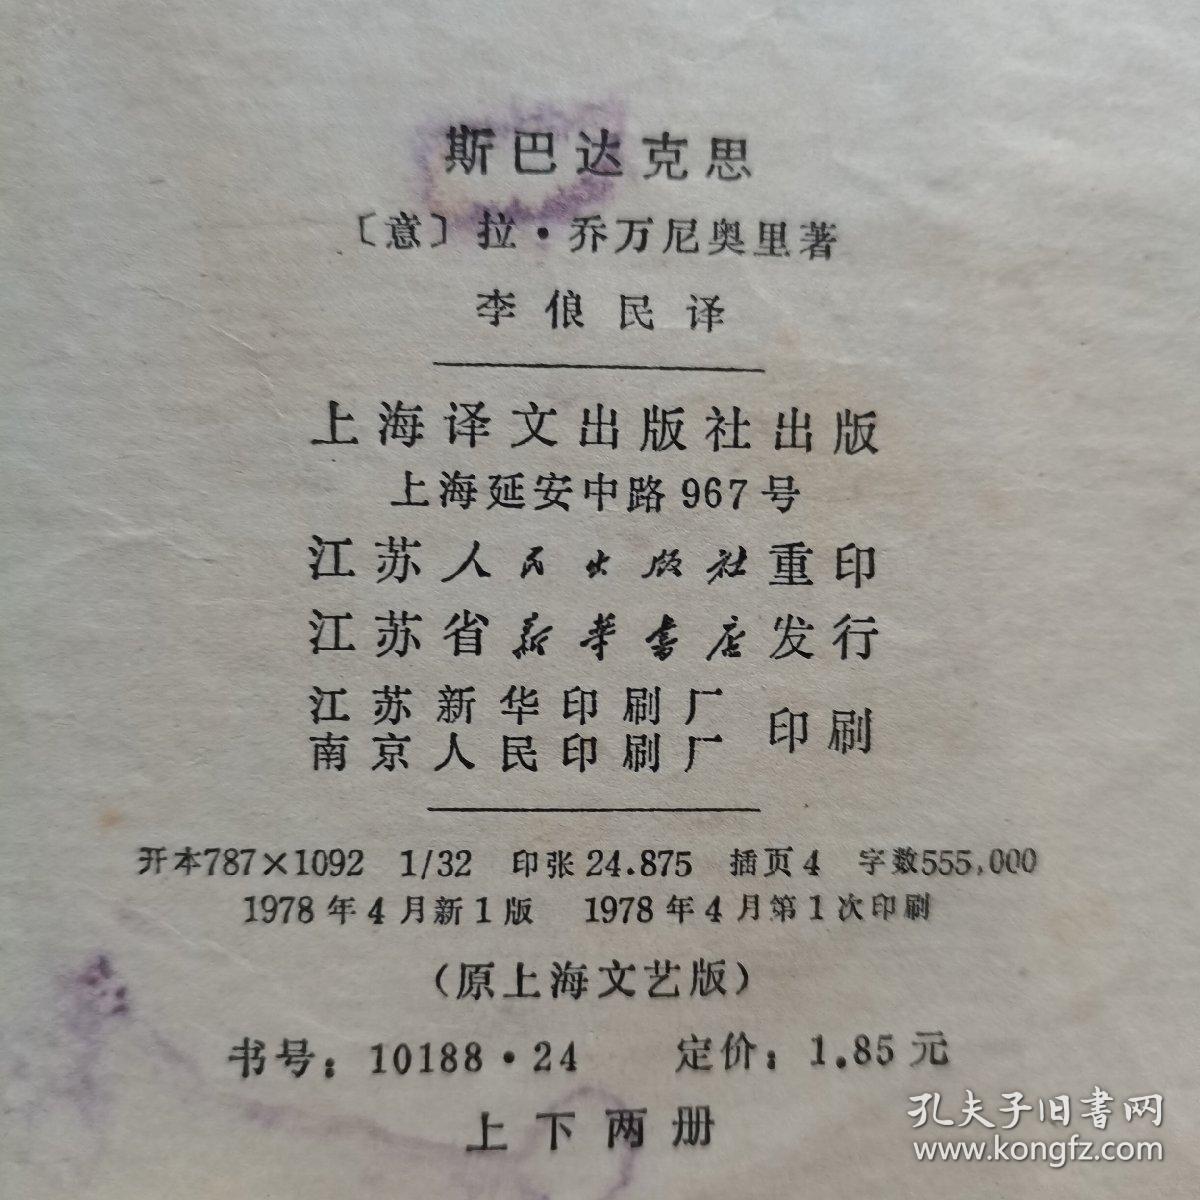 斯巴达克思（上、下册）。【上海译文出版社 出版，江苏人民出版社 重印，1978年，一版一印】。私藏書籍，共计2册/合售。